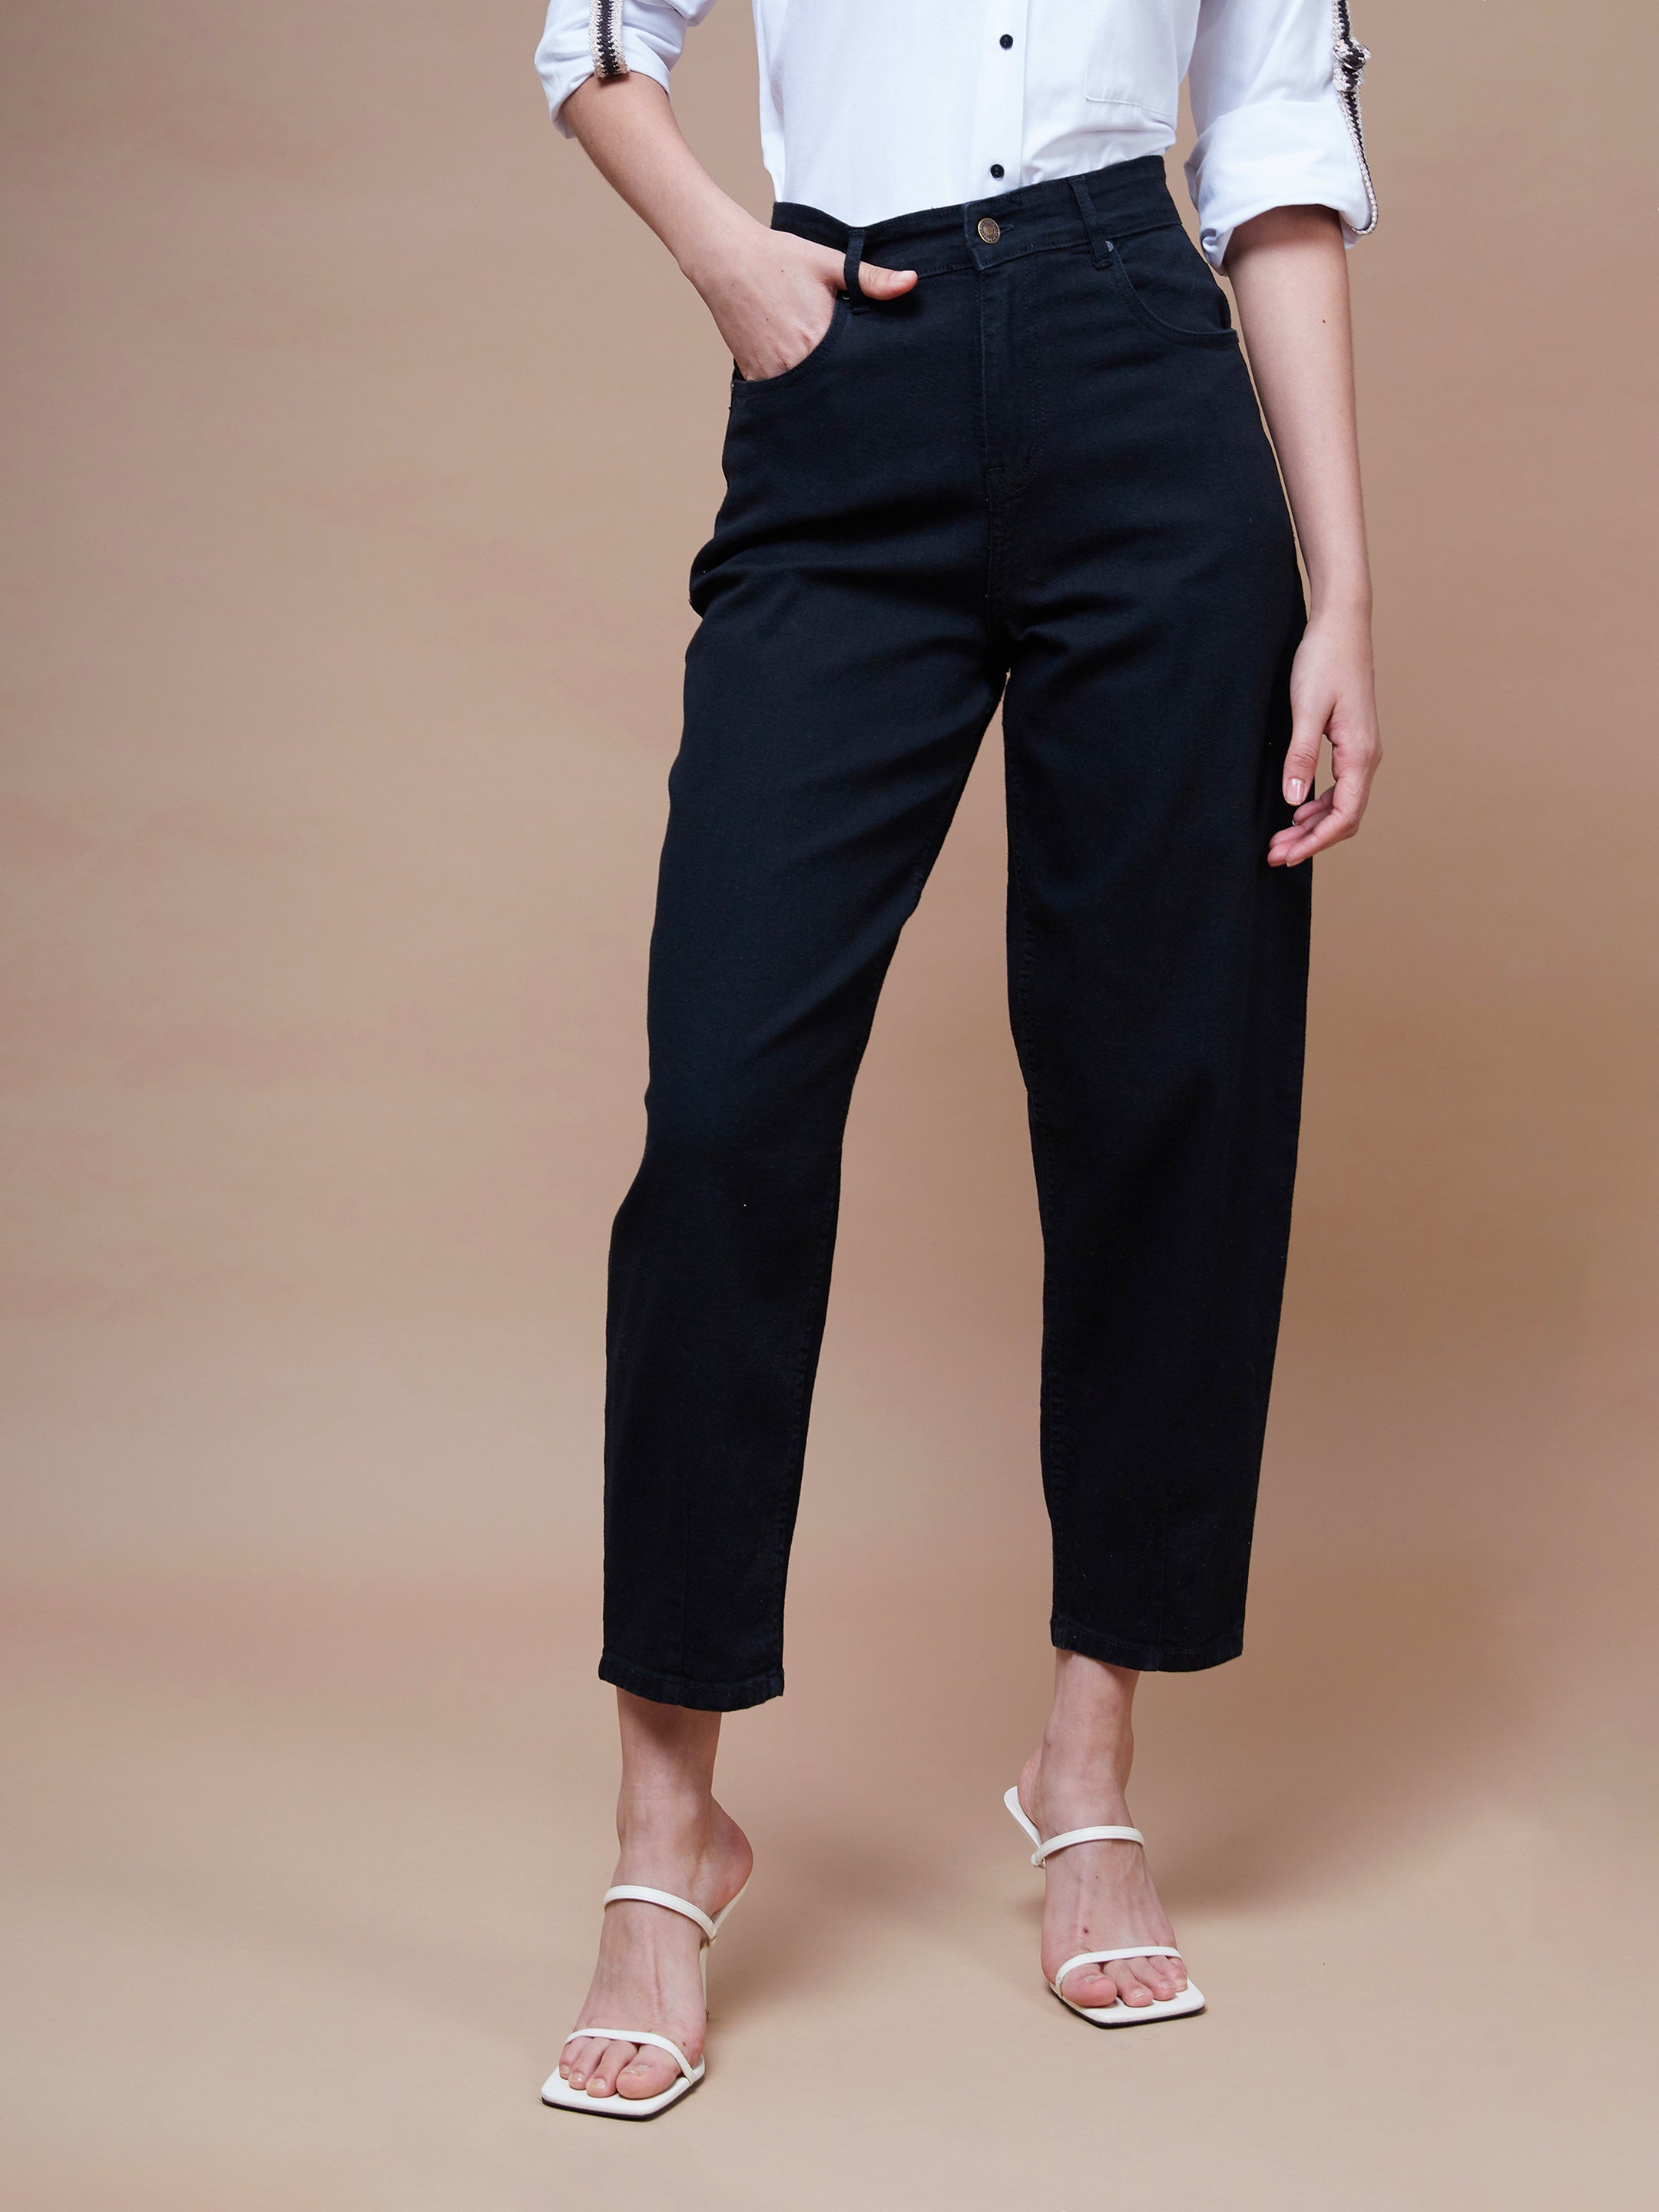 Women's Black Balloon Fit Jeans - SASSAFRAS